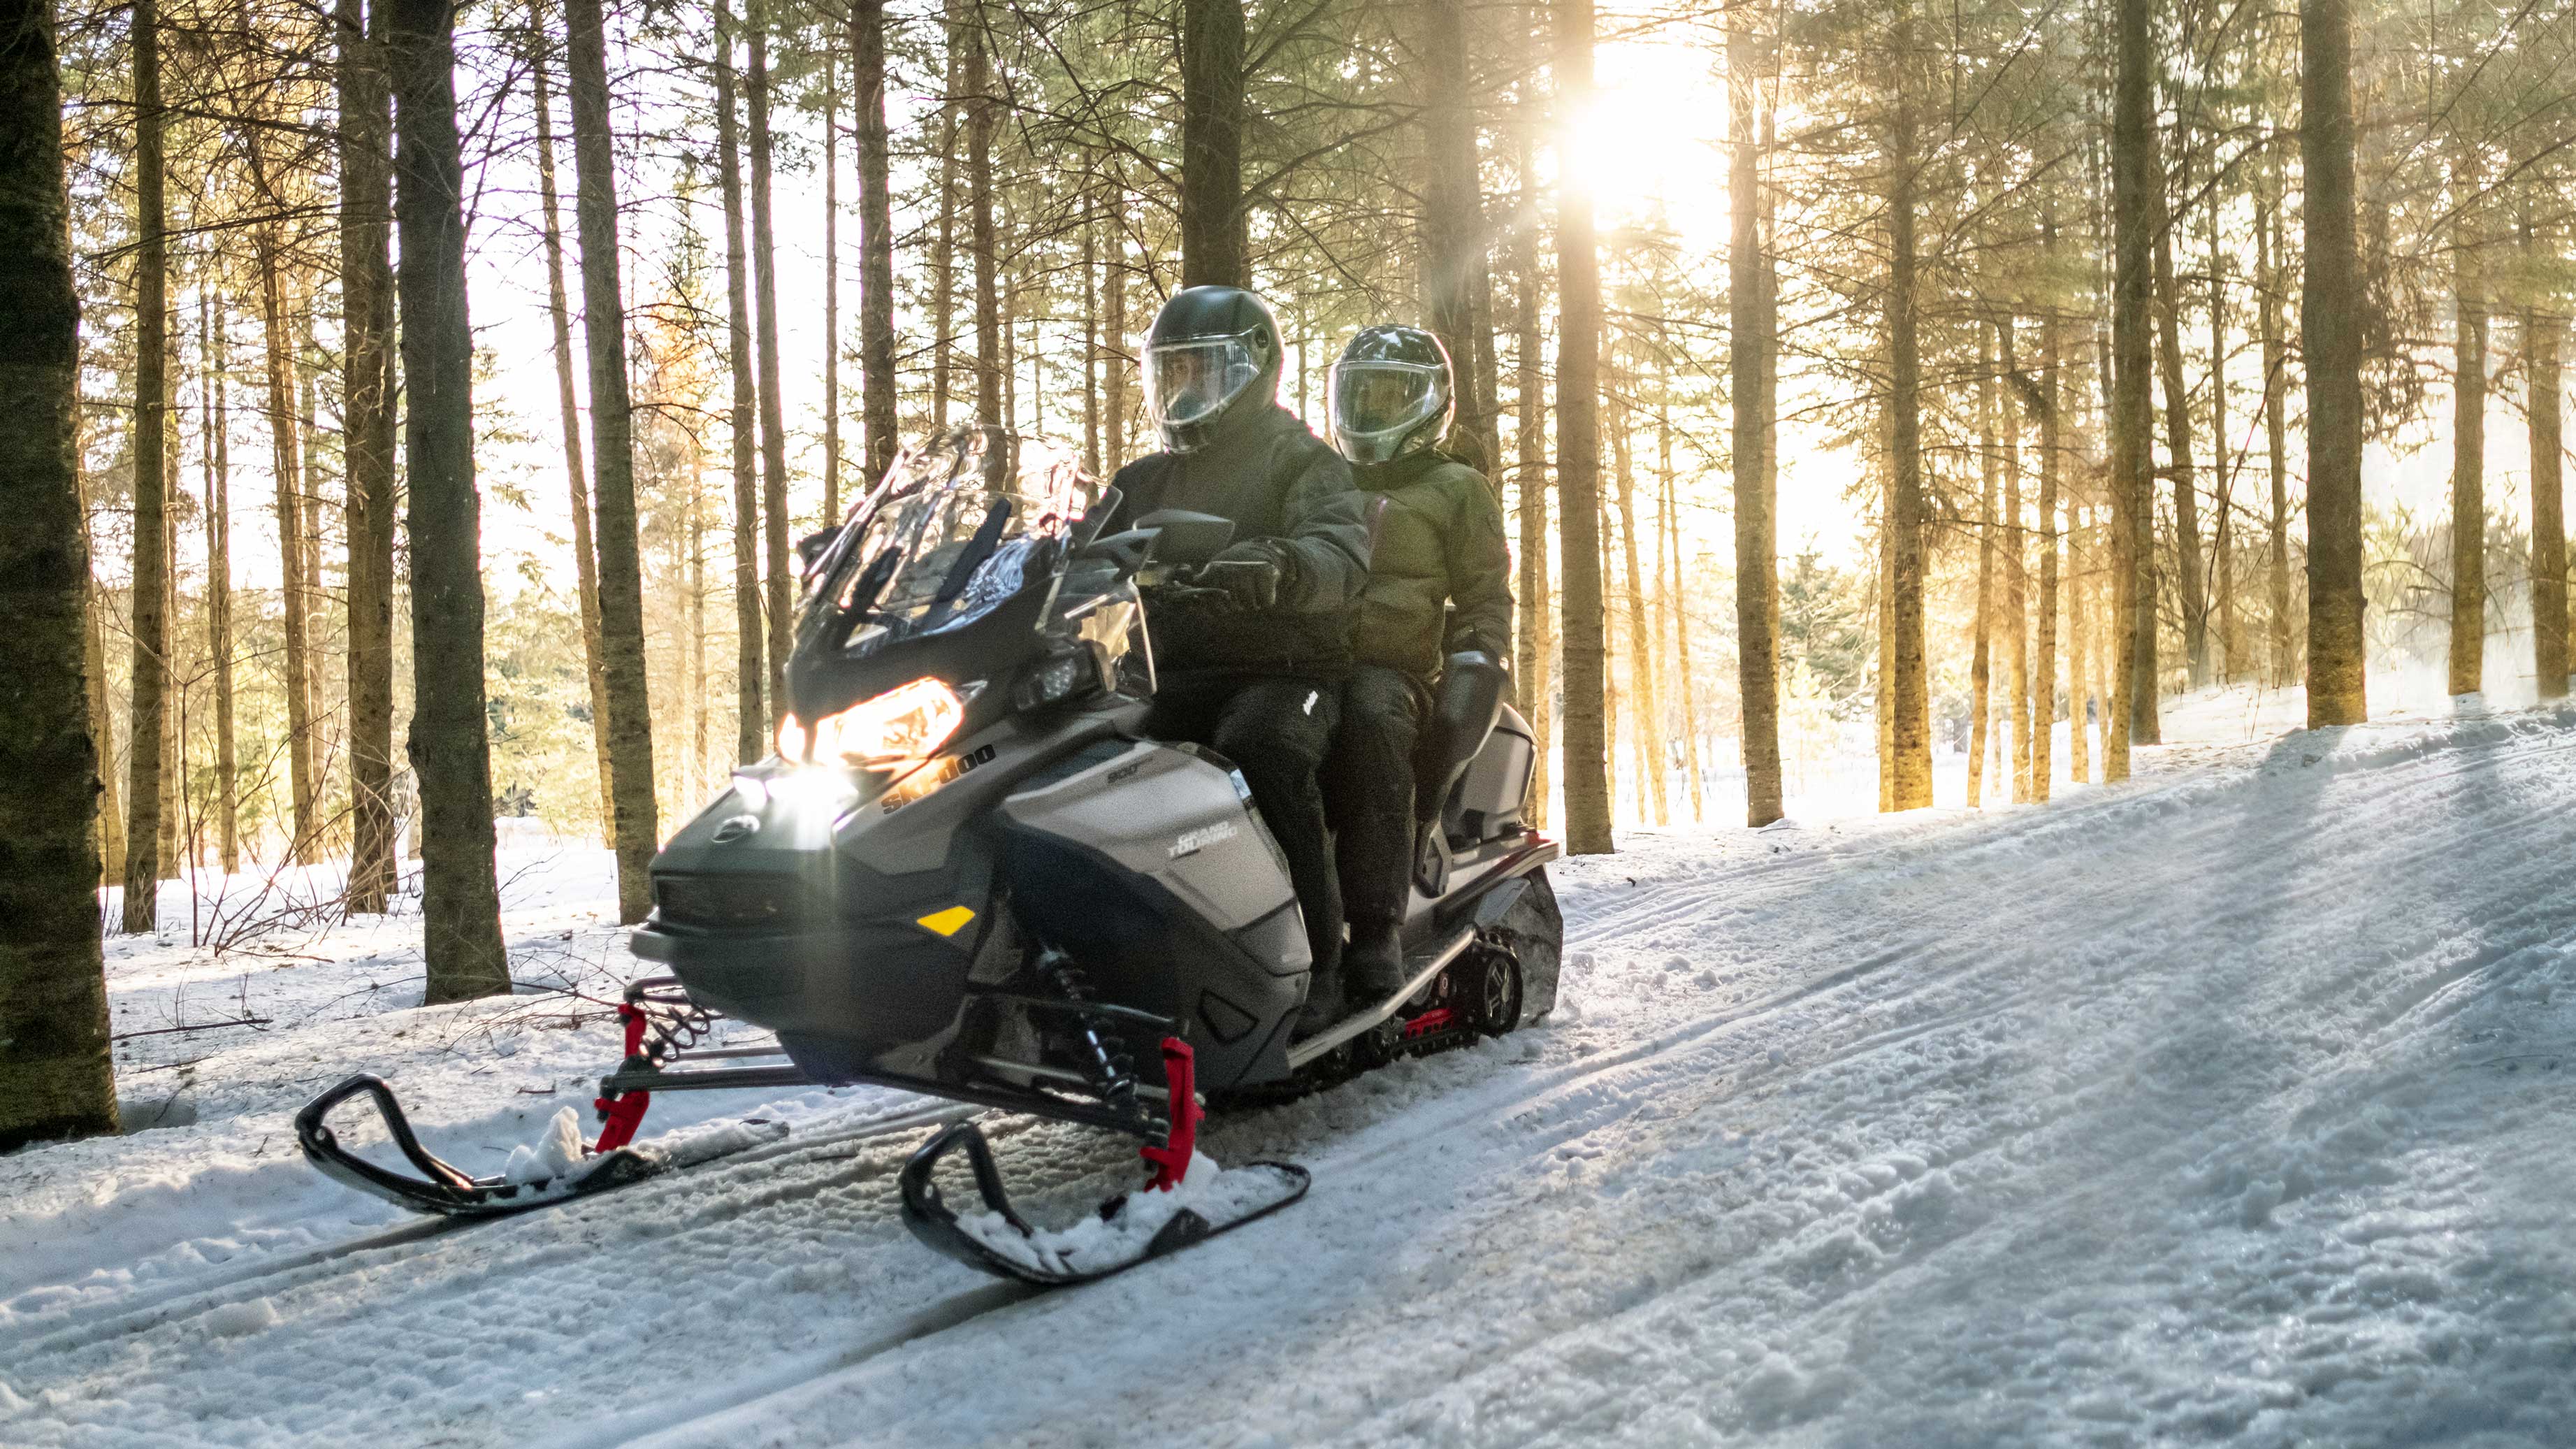 Couple riding 2022 Ski-Doo Grand Touring snowmobile